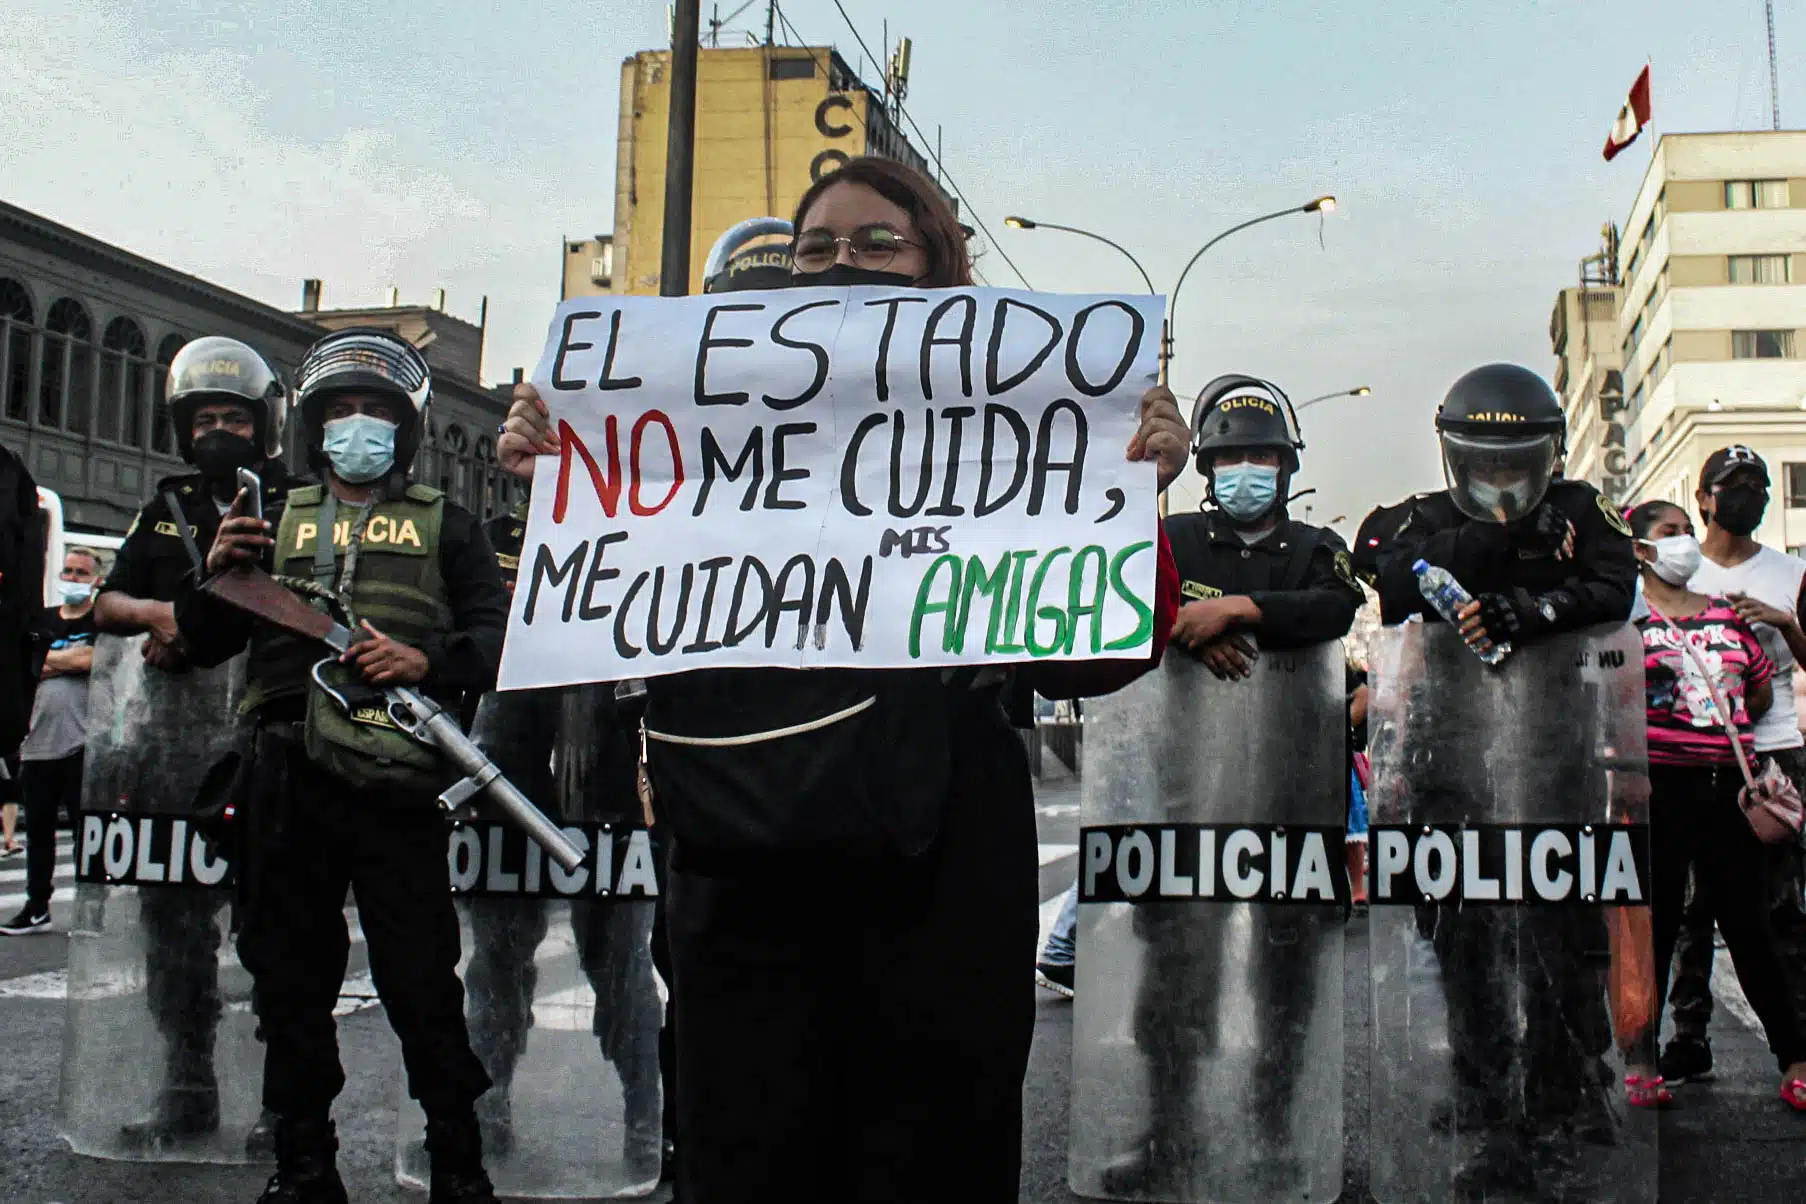 Foto de una manifestación. Una mujer lleva un cartel que dice "El Estado no me cuida, me cuidan mis amigas". Atrás de ella hay policías con cascos y escudos.